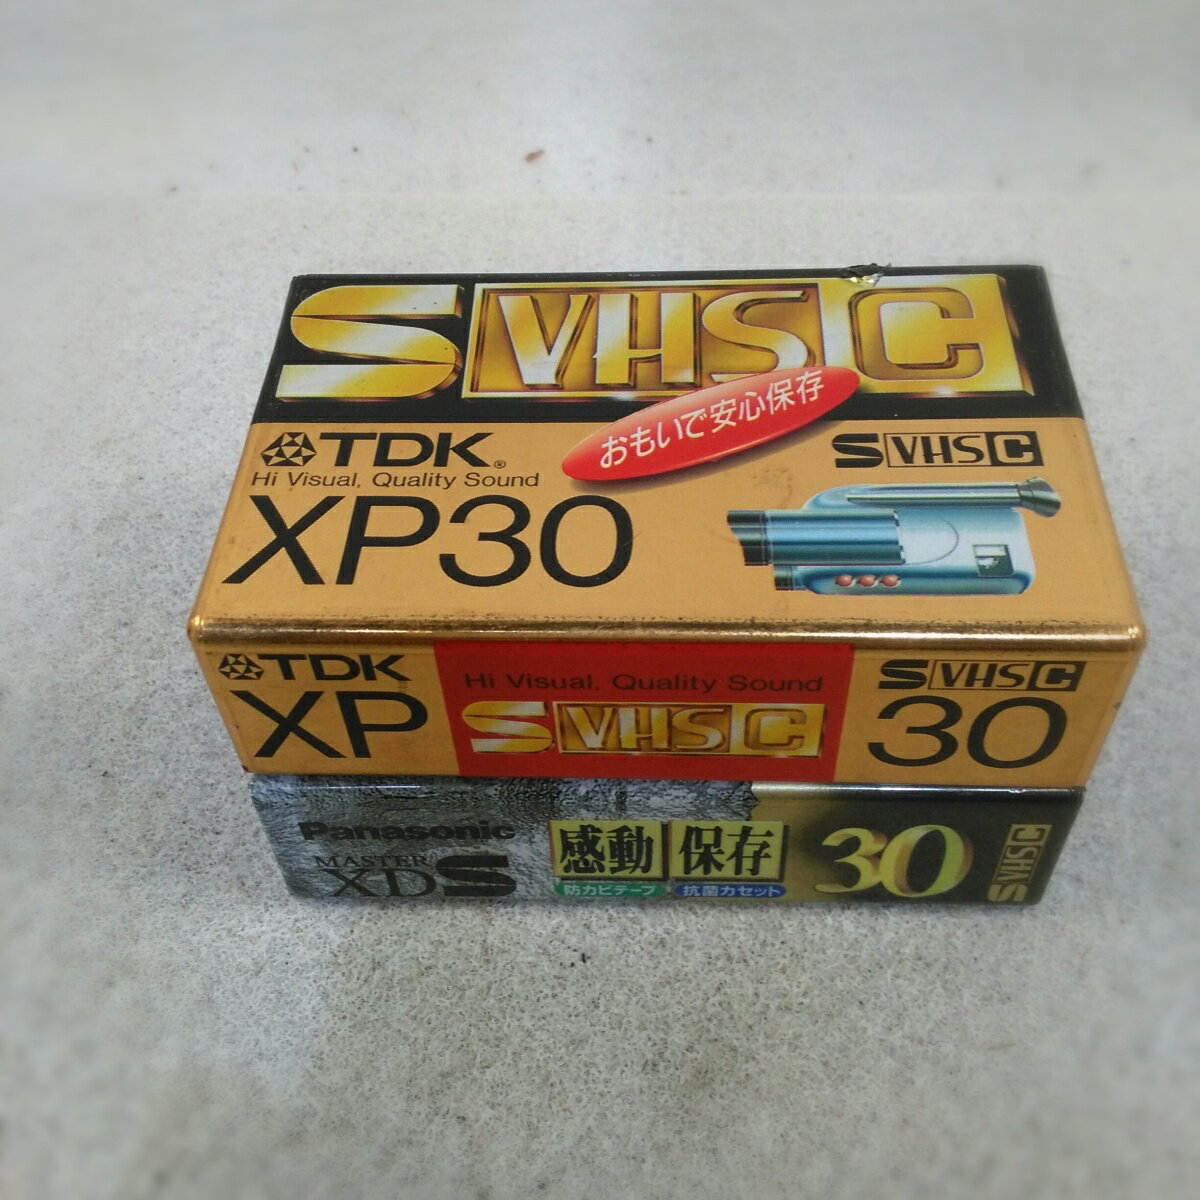 【未使用品】TDK Panasonic 30分 S-VHS-C ビデオテープ 2本セット【送料無料】【メール便でお送りします】代引き不可